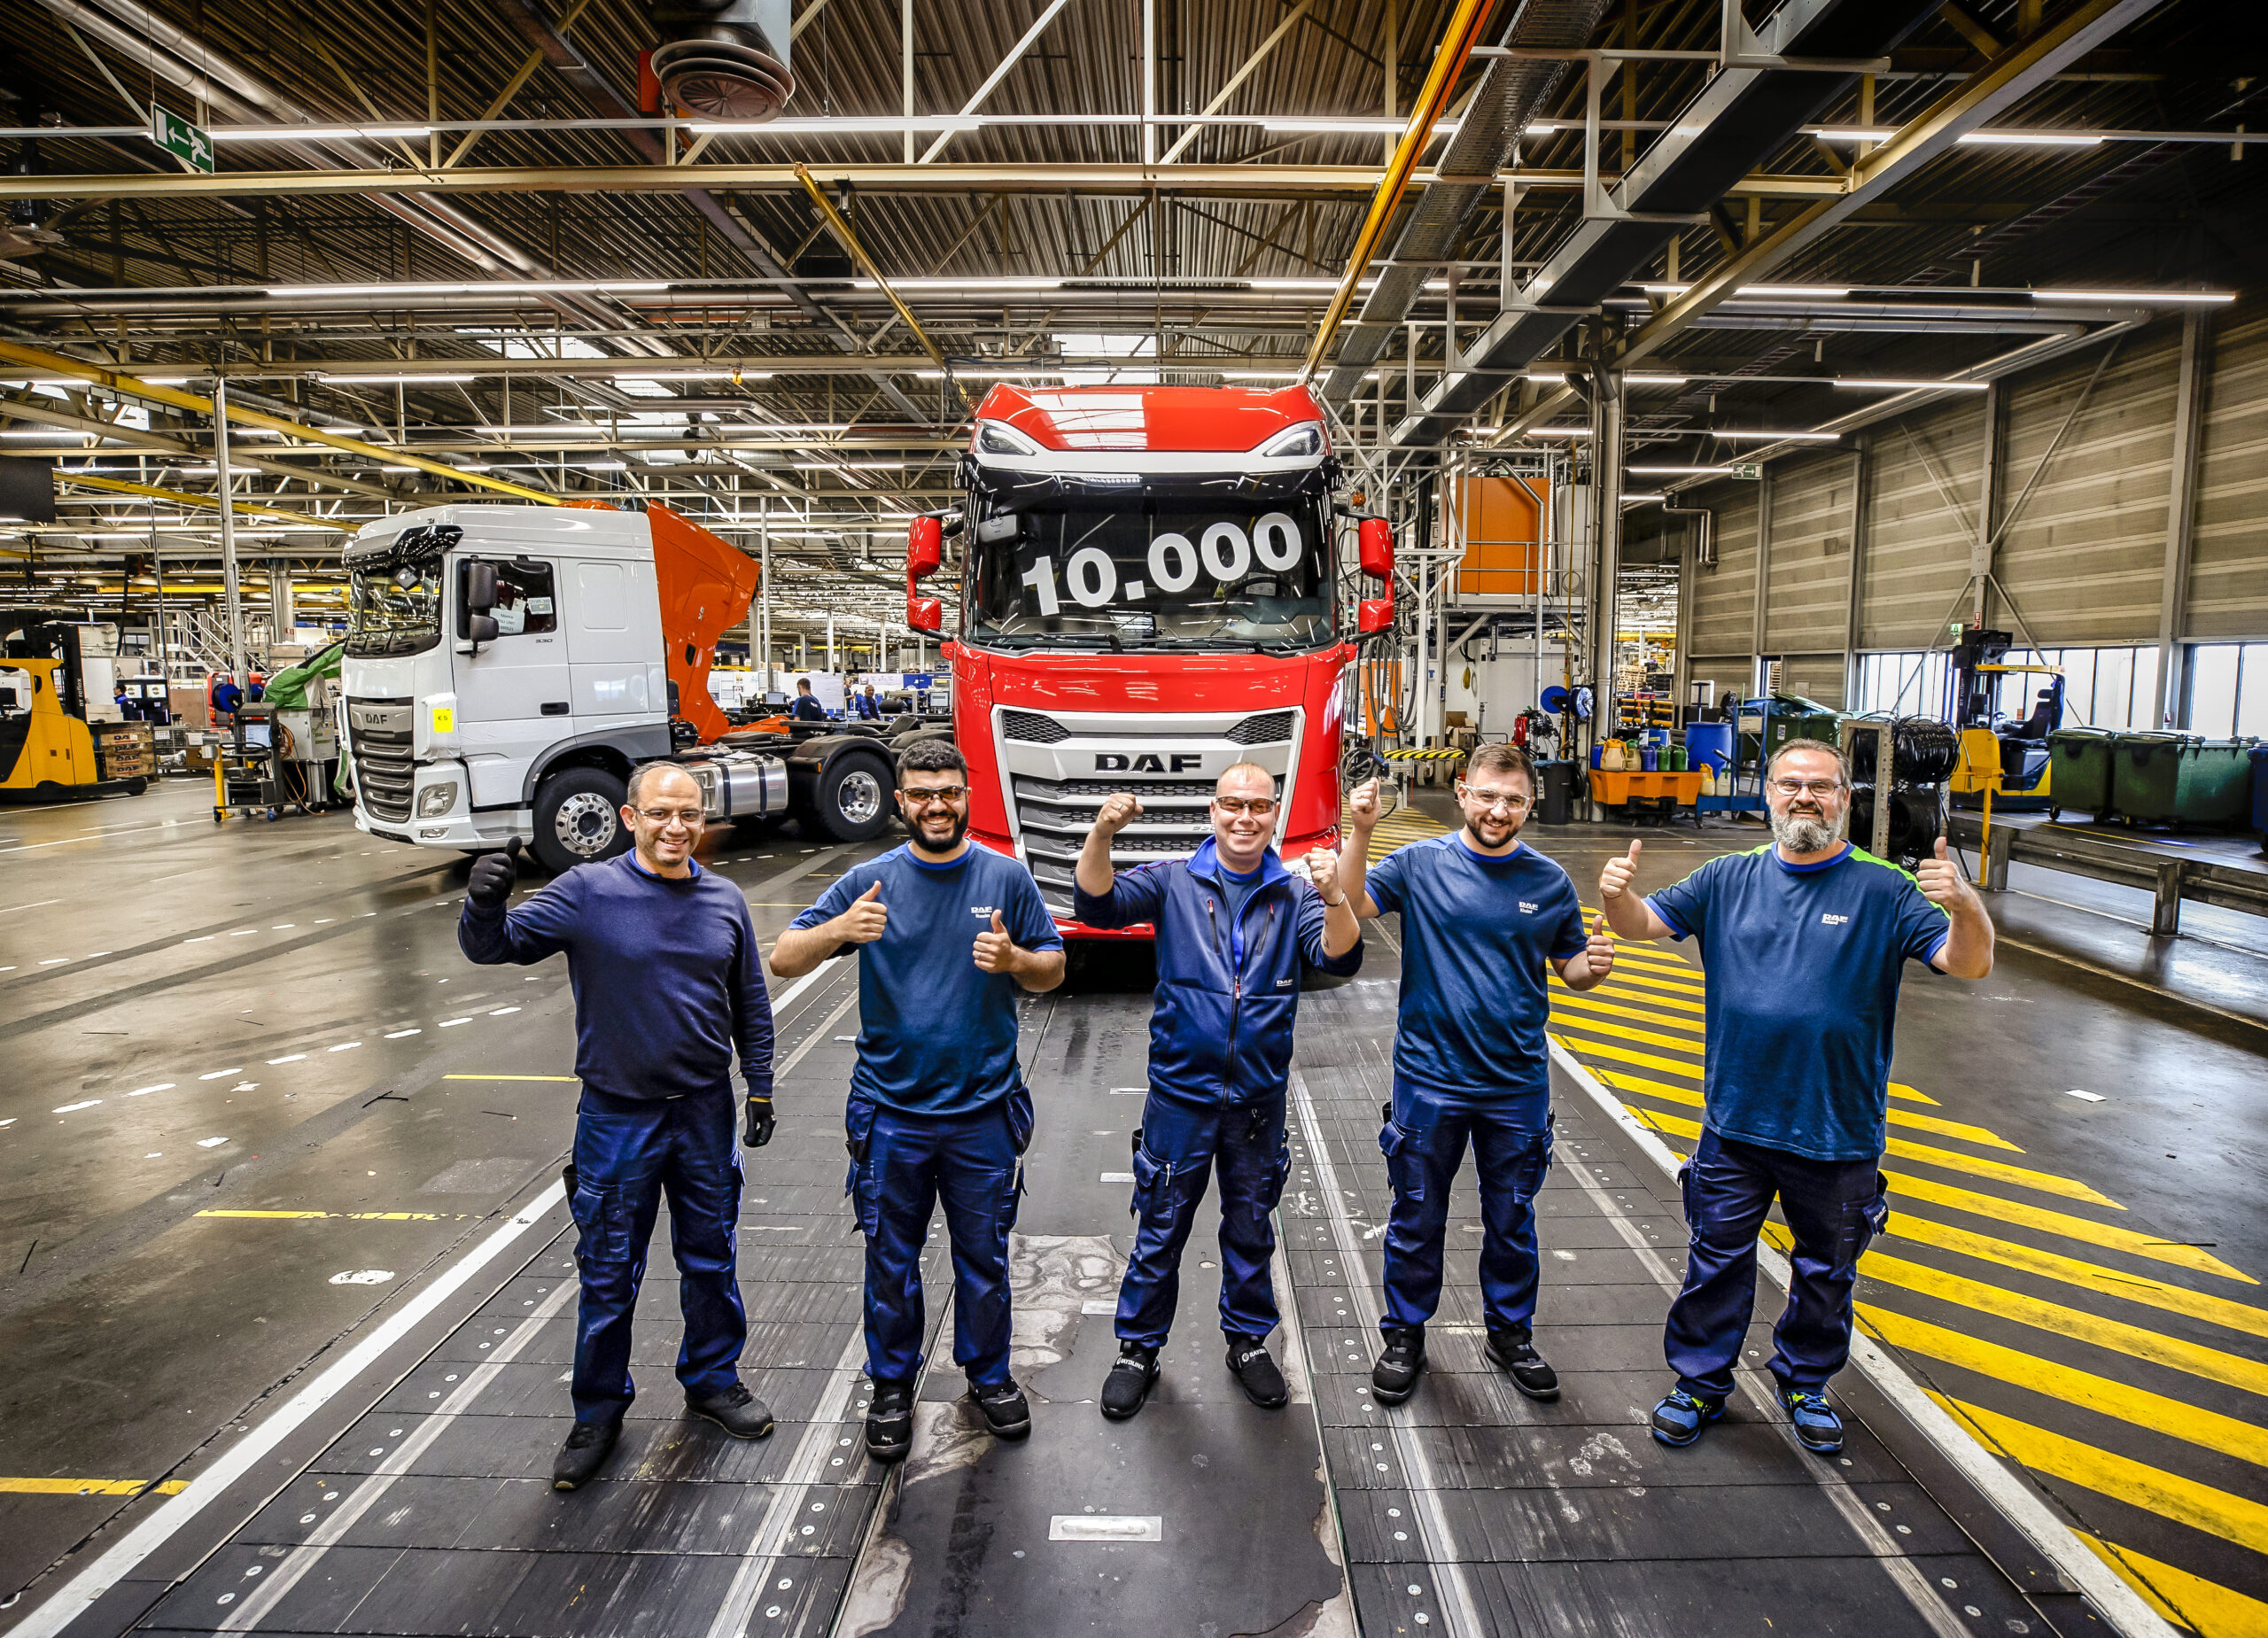 Mijlpaal Nieuwe Generatie DAF 10.000ste truck gebouwd